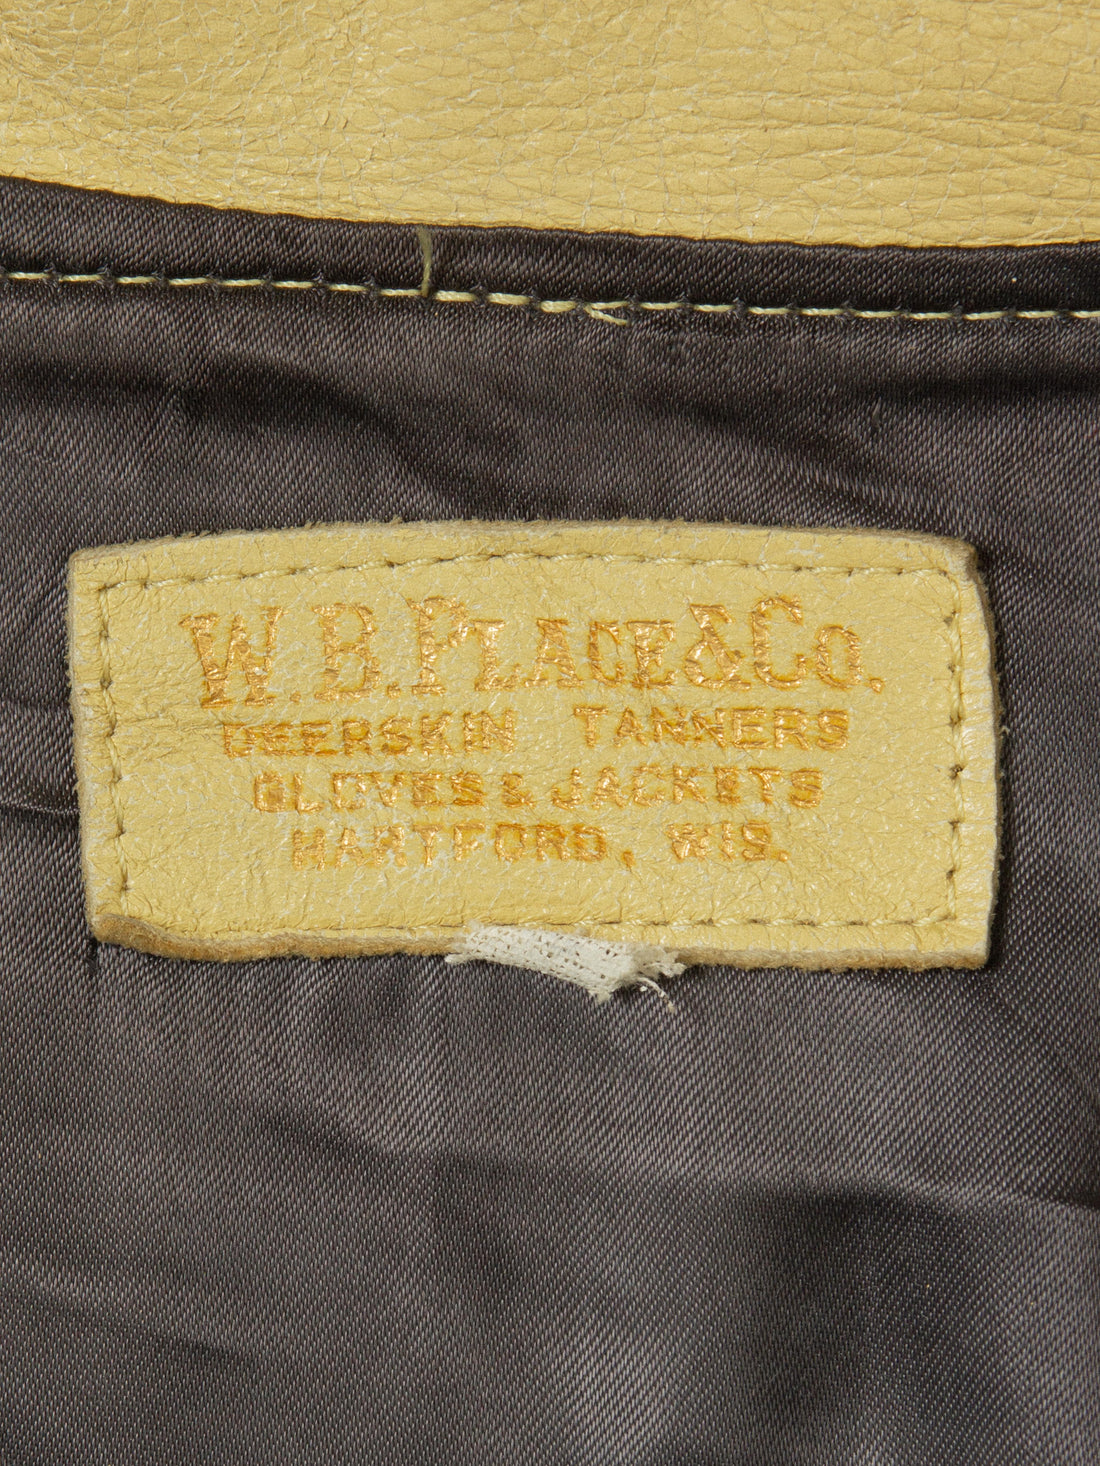 Vtg 1950s Western W.B Place Deerskin Fringe Jacket - Made in USA (M ...